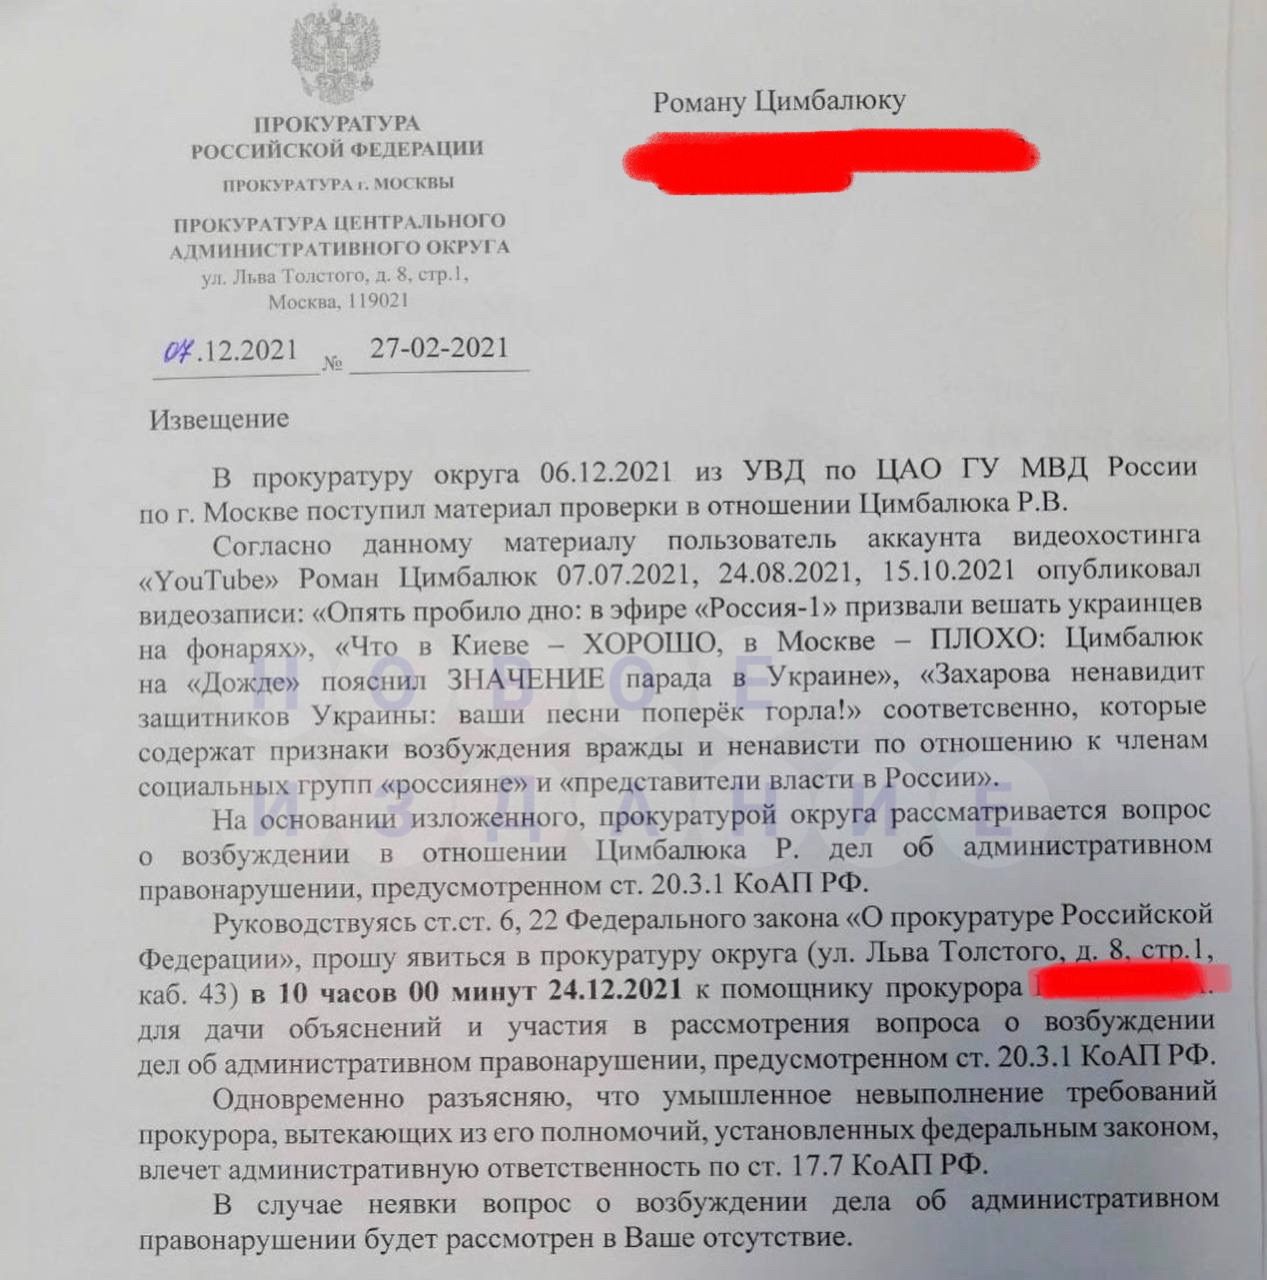 Цимбалюка вызвали на допрос в прокуратуру Москвы по делу о возбуждении вражды и ненависти к россиянам - 1 - изображение